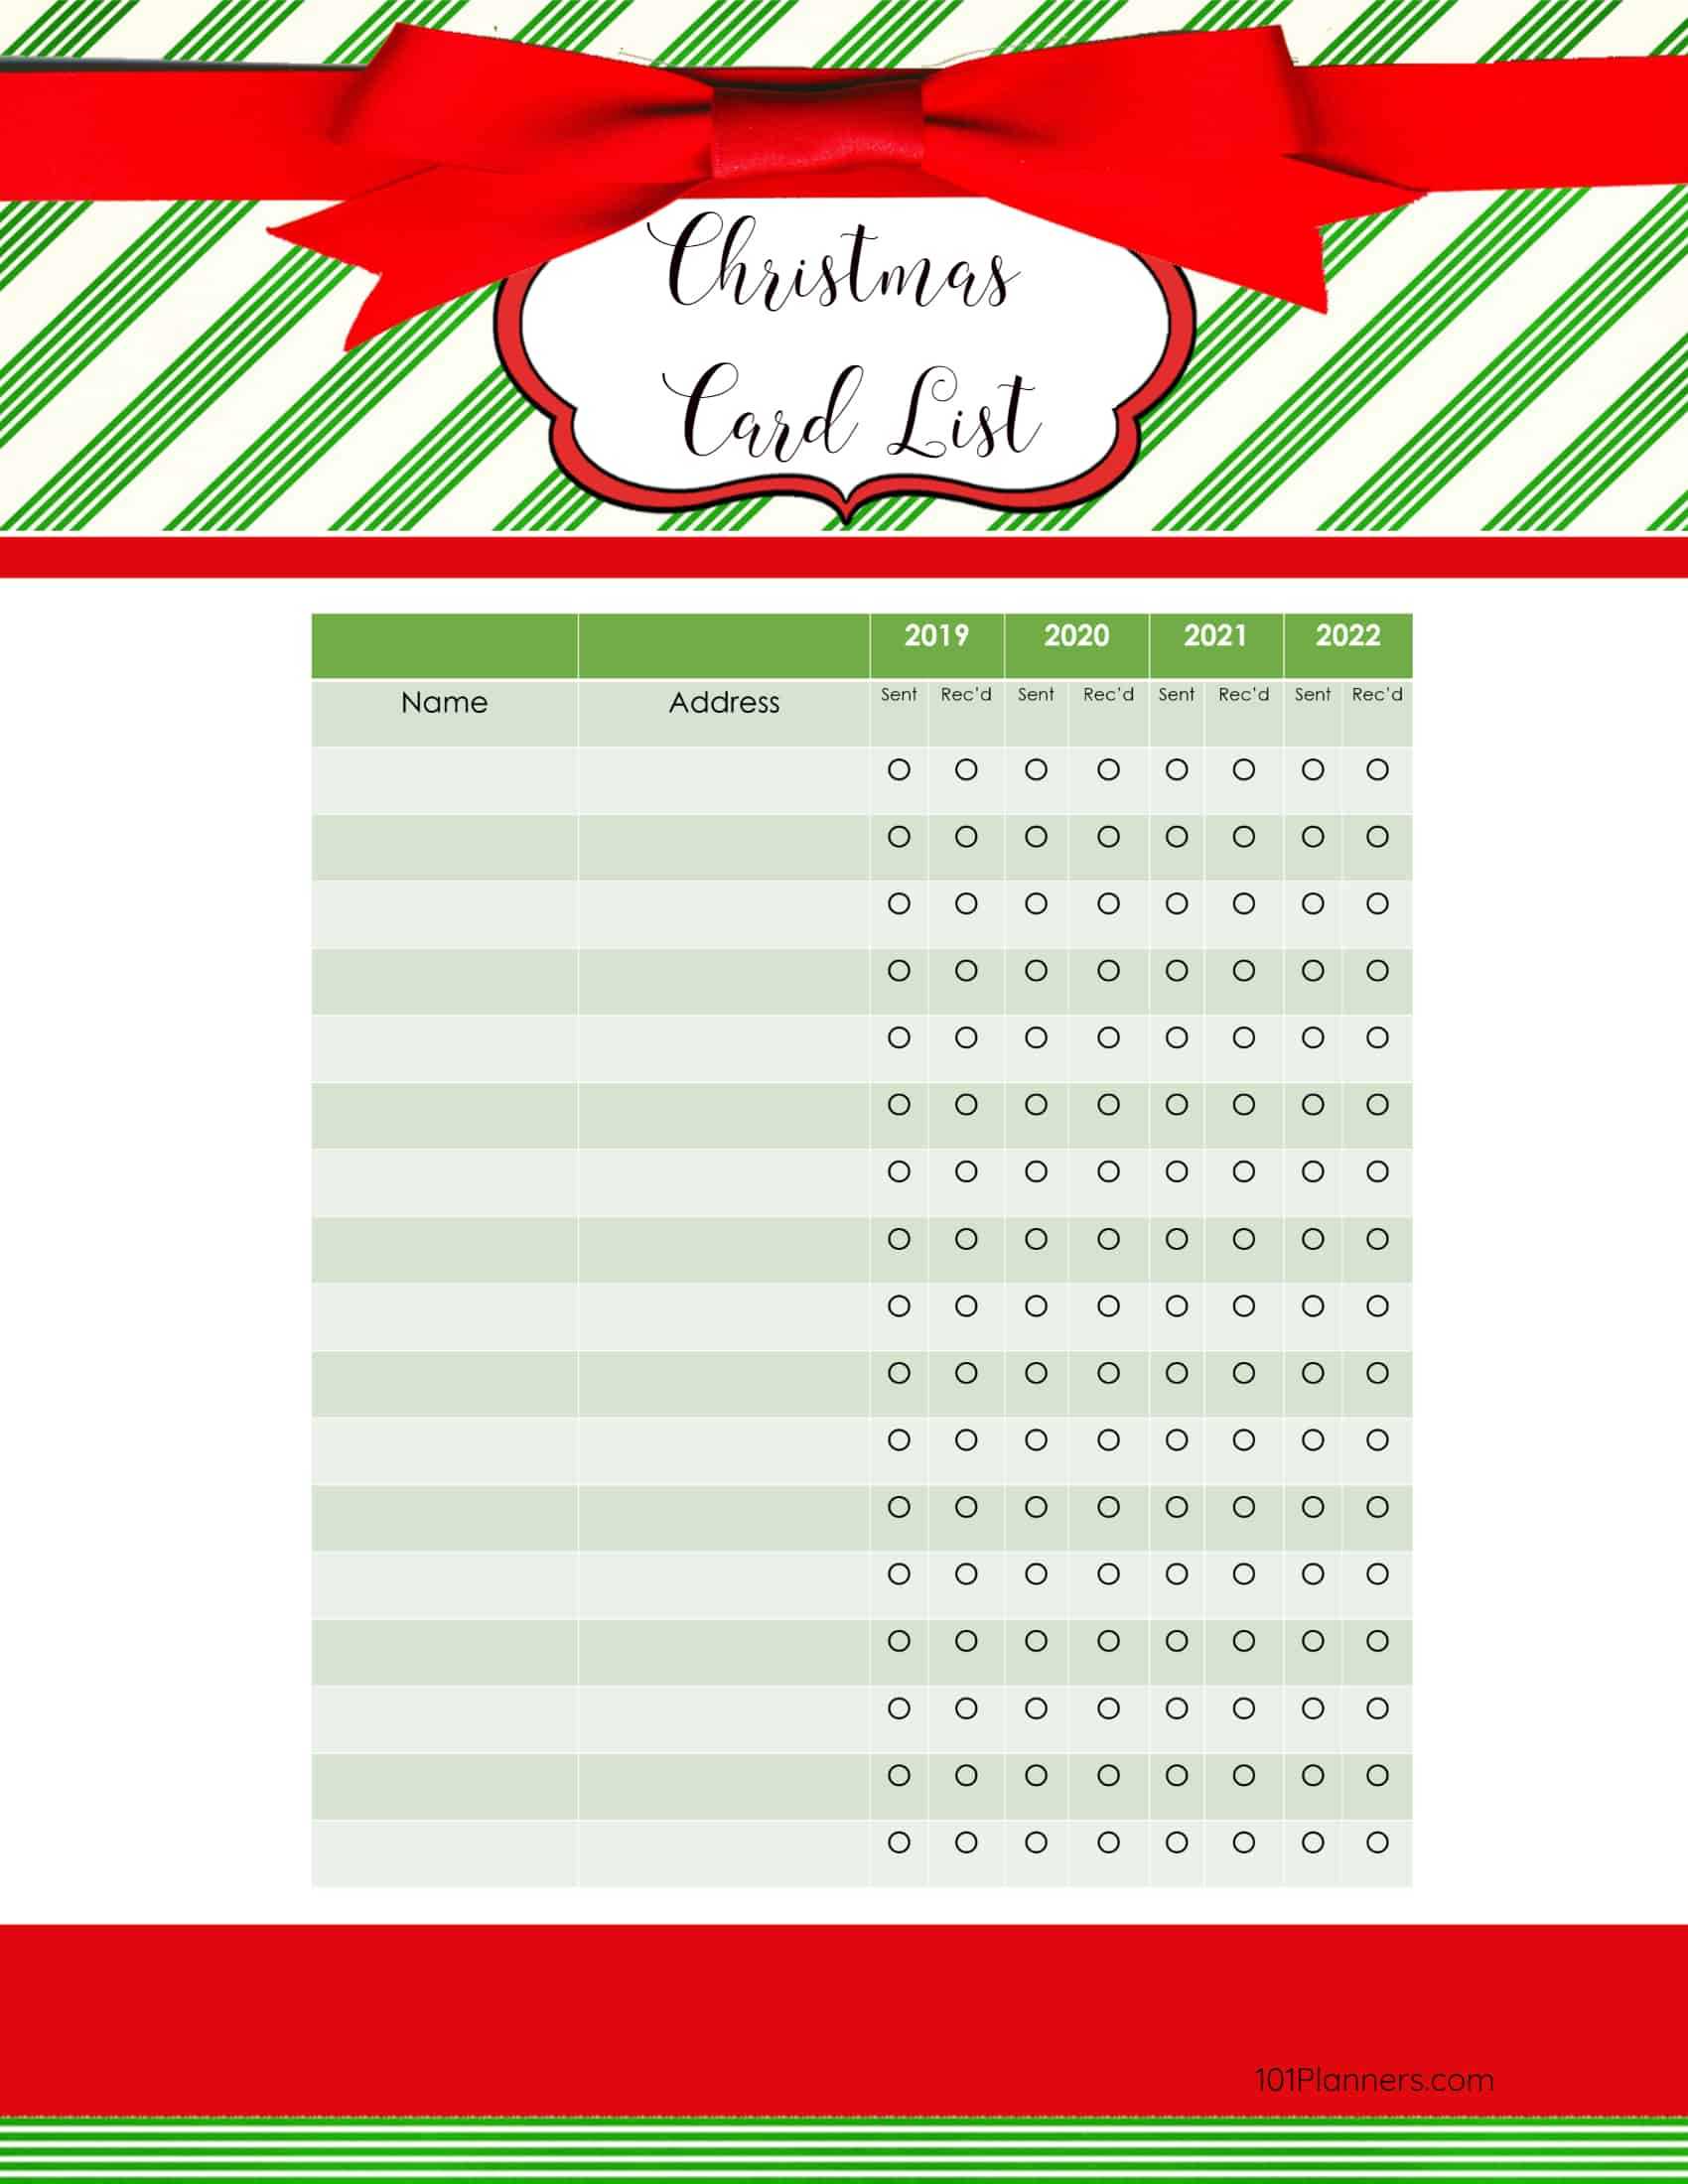 Free Printable Christmas Gift List Template With Regard To Christmas Card List Template